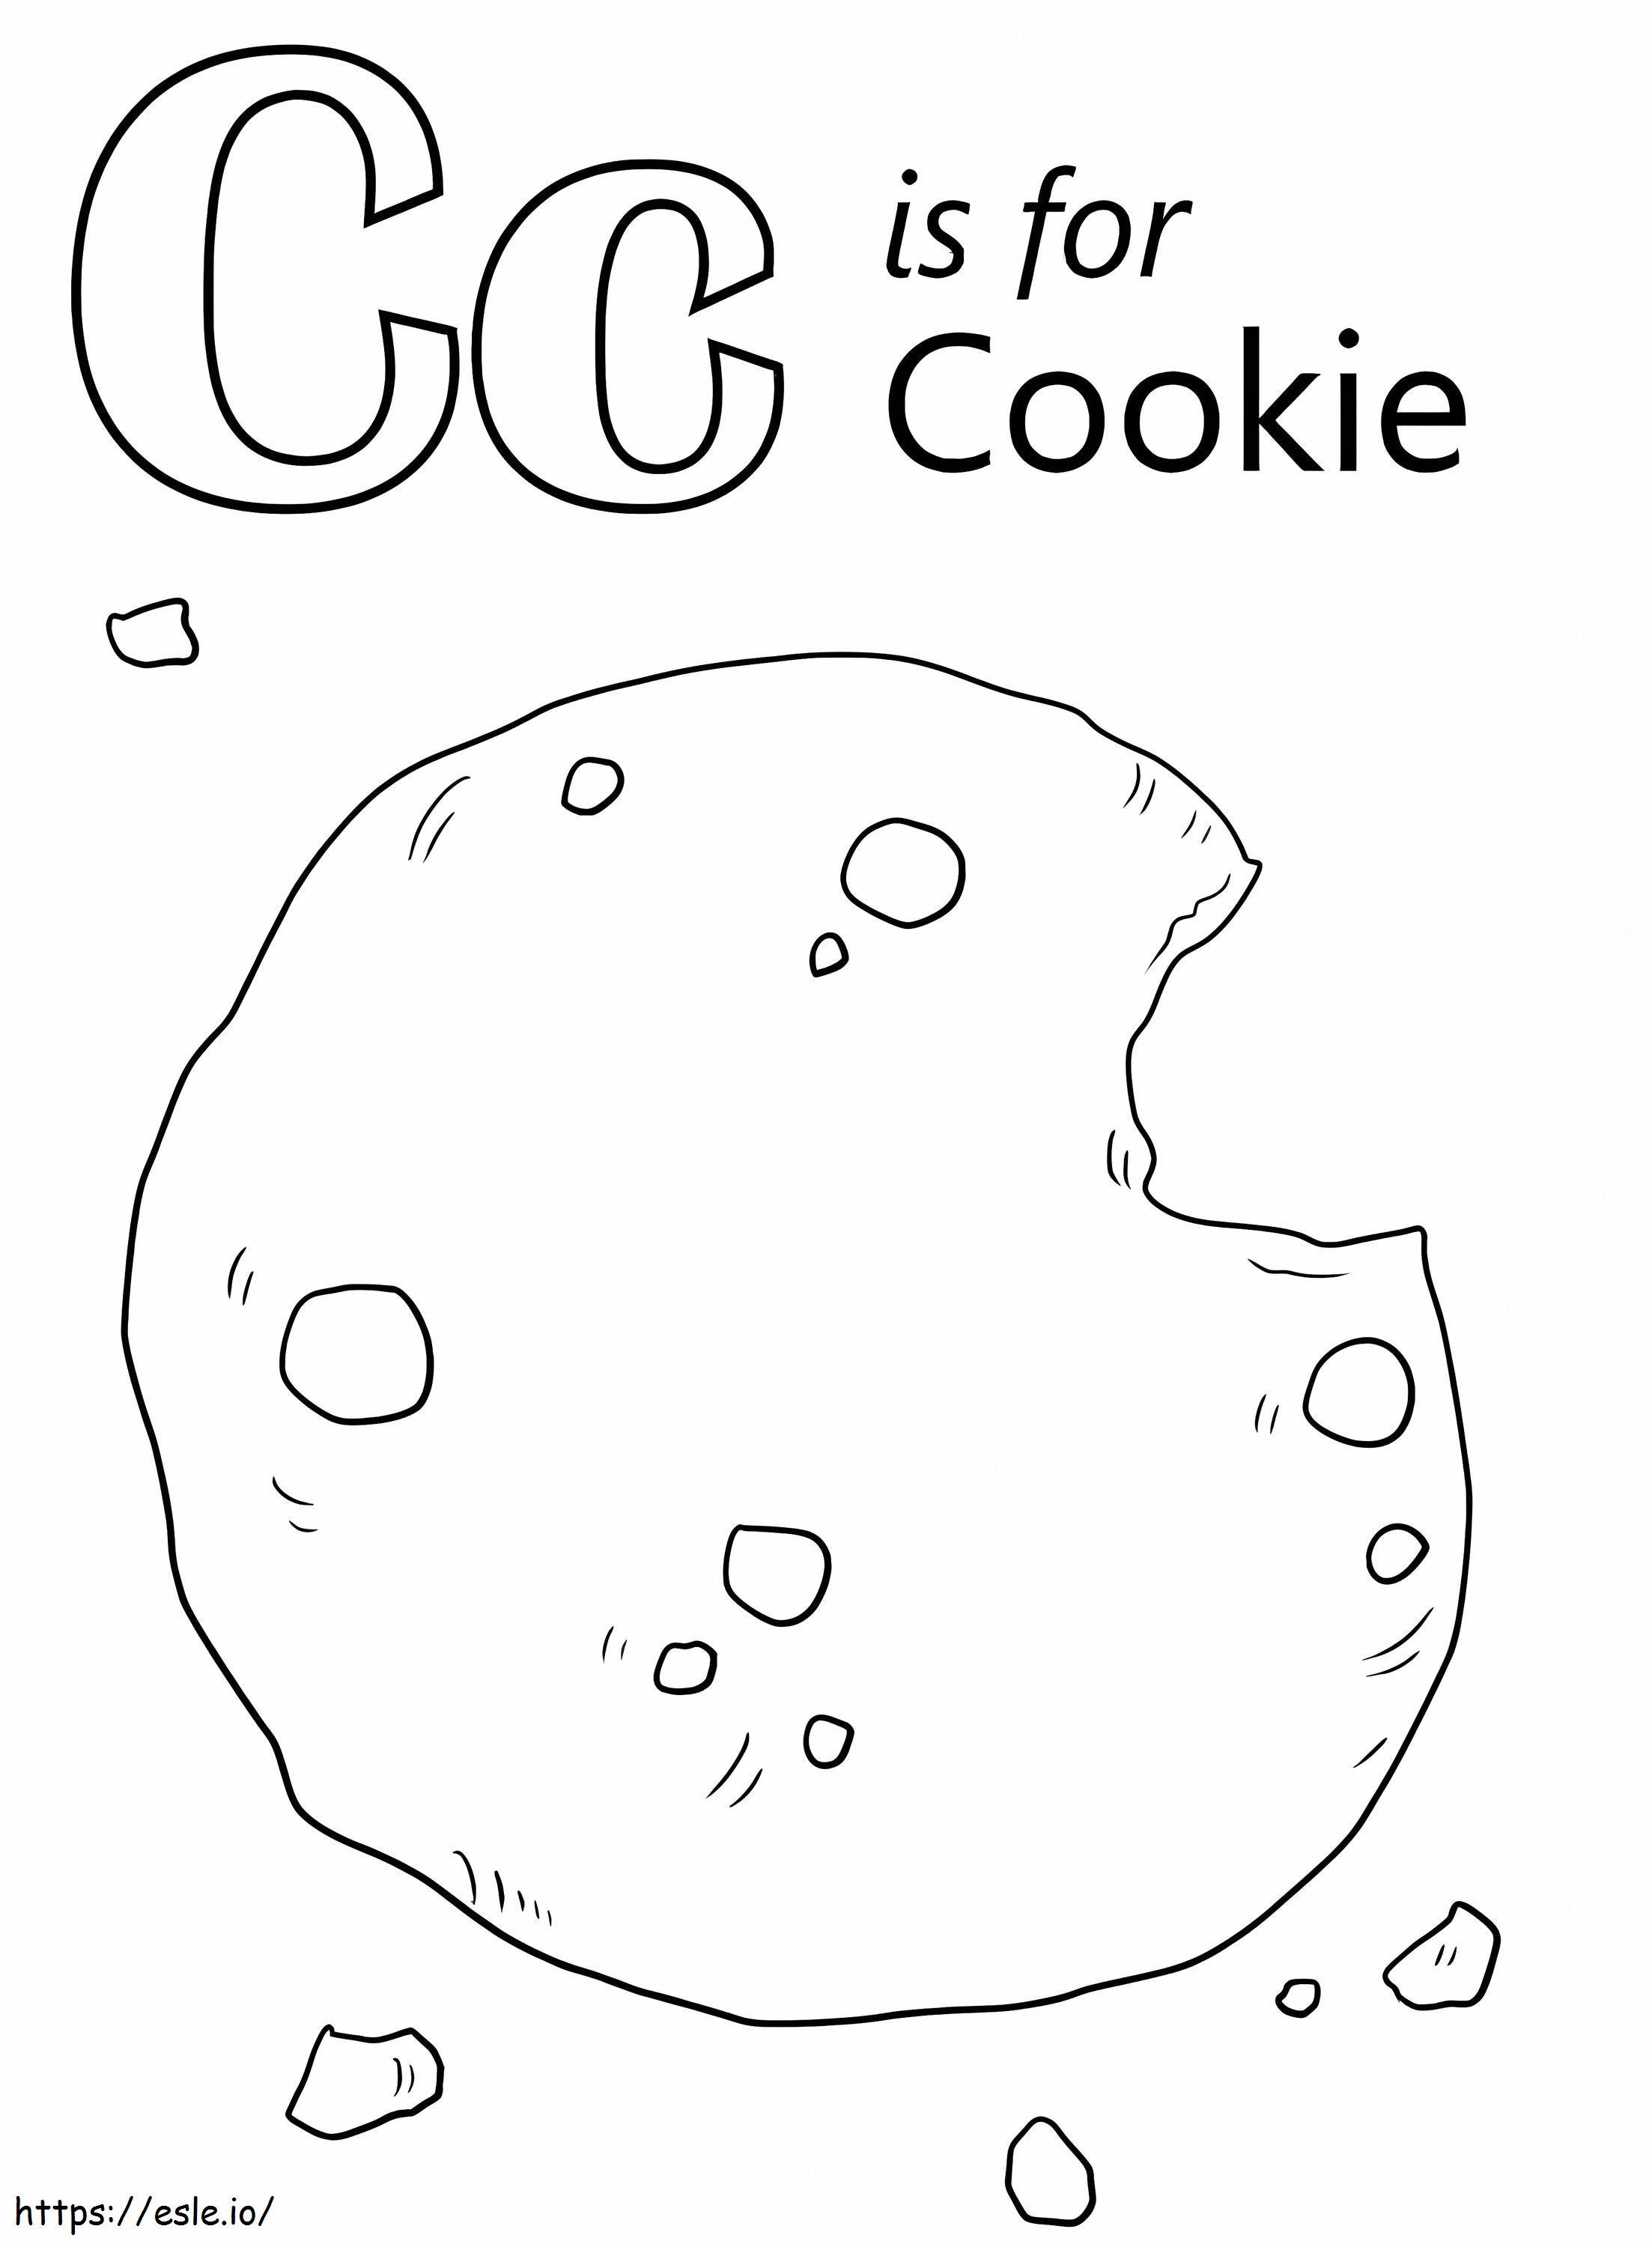 Cookie-Buchstabe C ausmalbilder